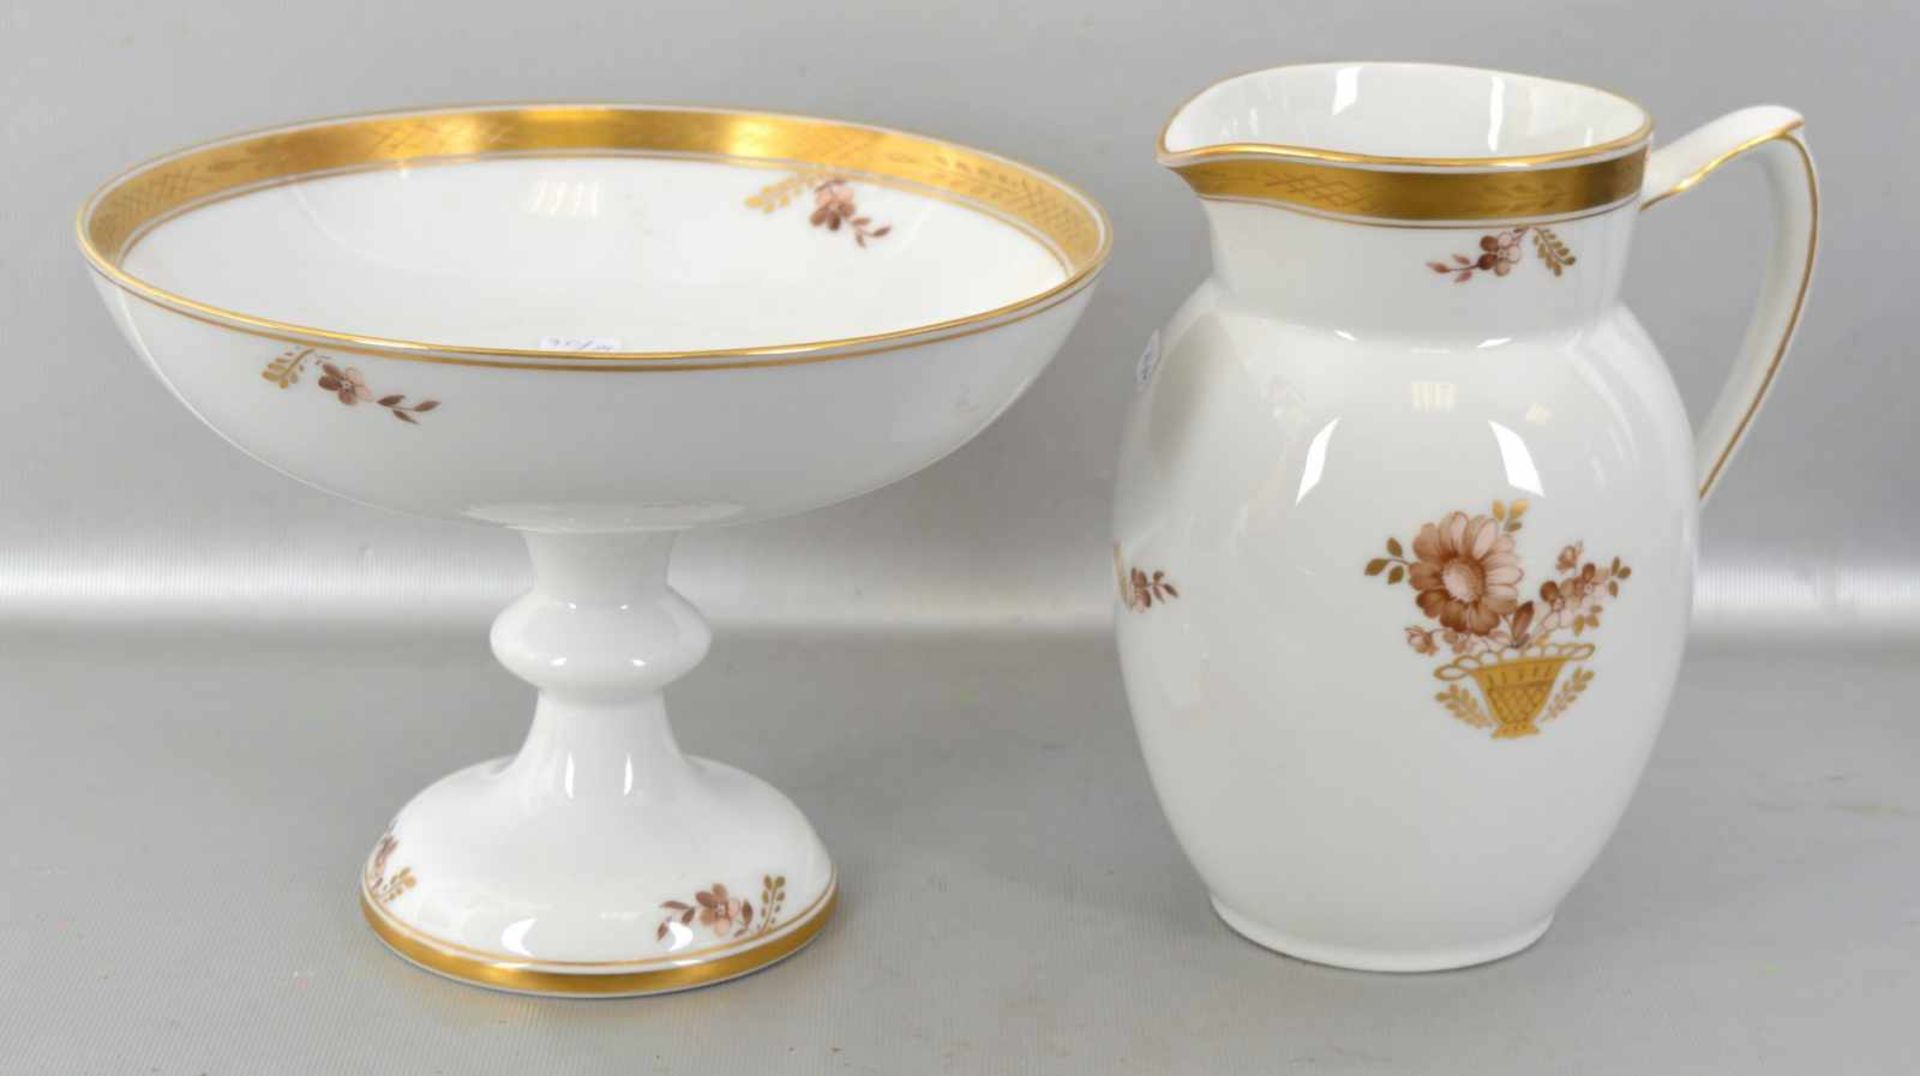 Krug und Aufsatzschale breiter Goldrand, Wandung und Spiegel mit goldenen Vasen und Blumen bemalt, H